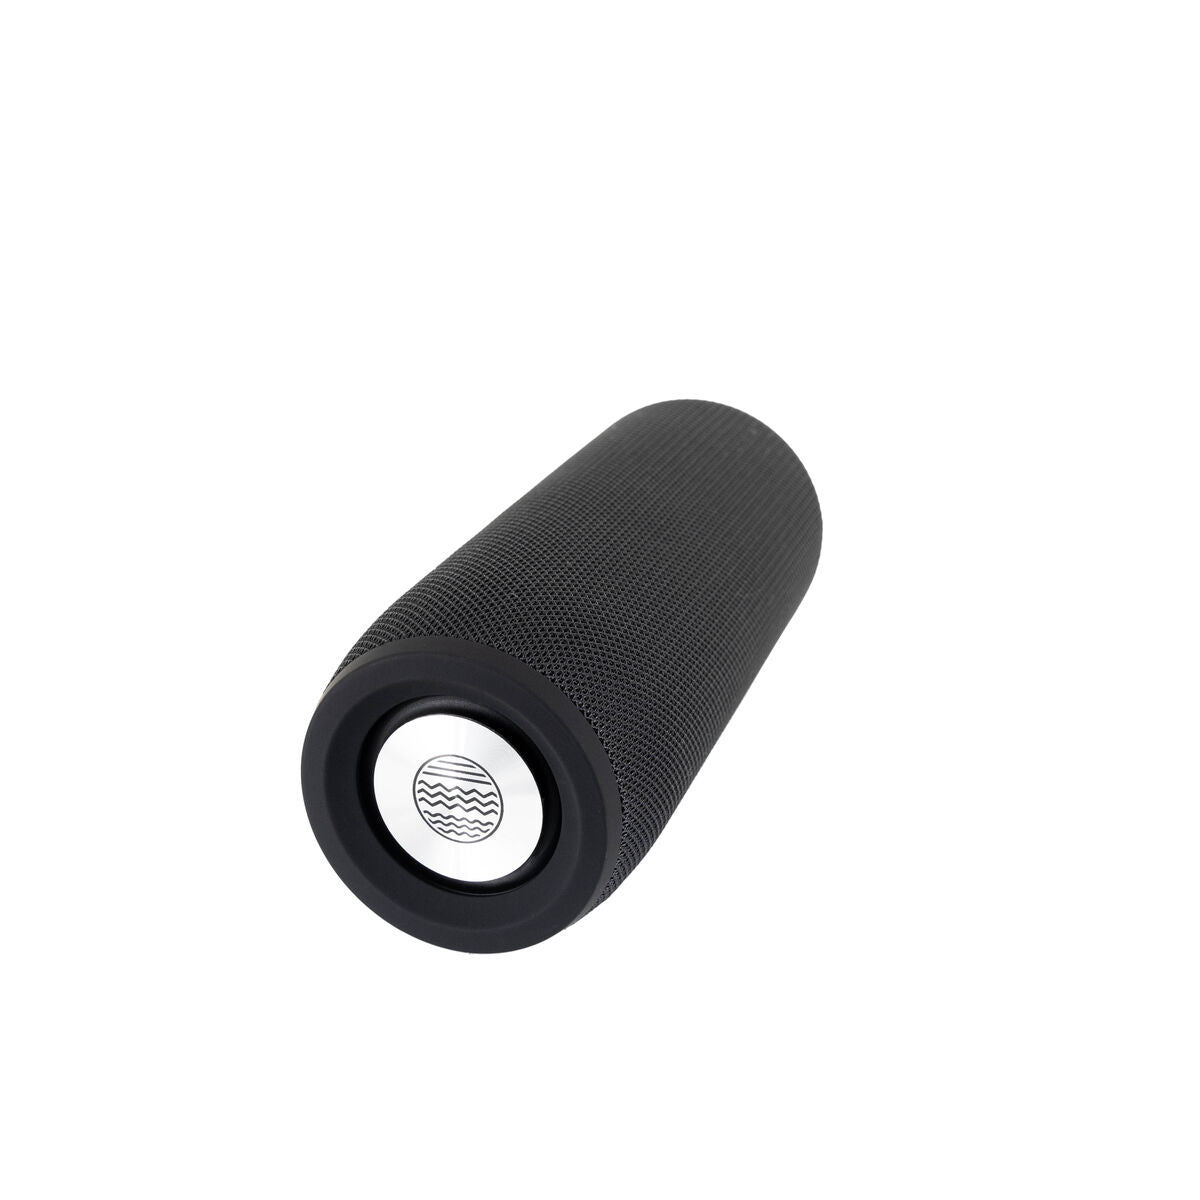 Altoparlante Bluetooth Portatile OPP054 Nero 10 W - Disponibile in 3-4 giorni lavorativi